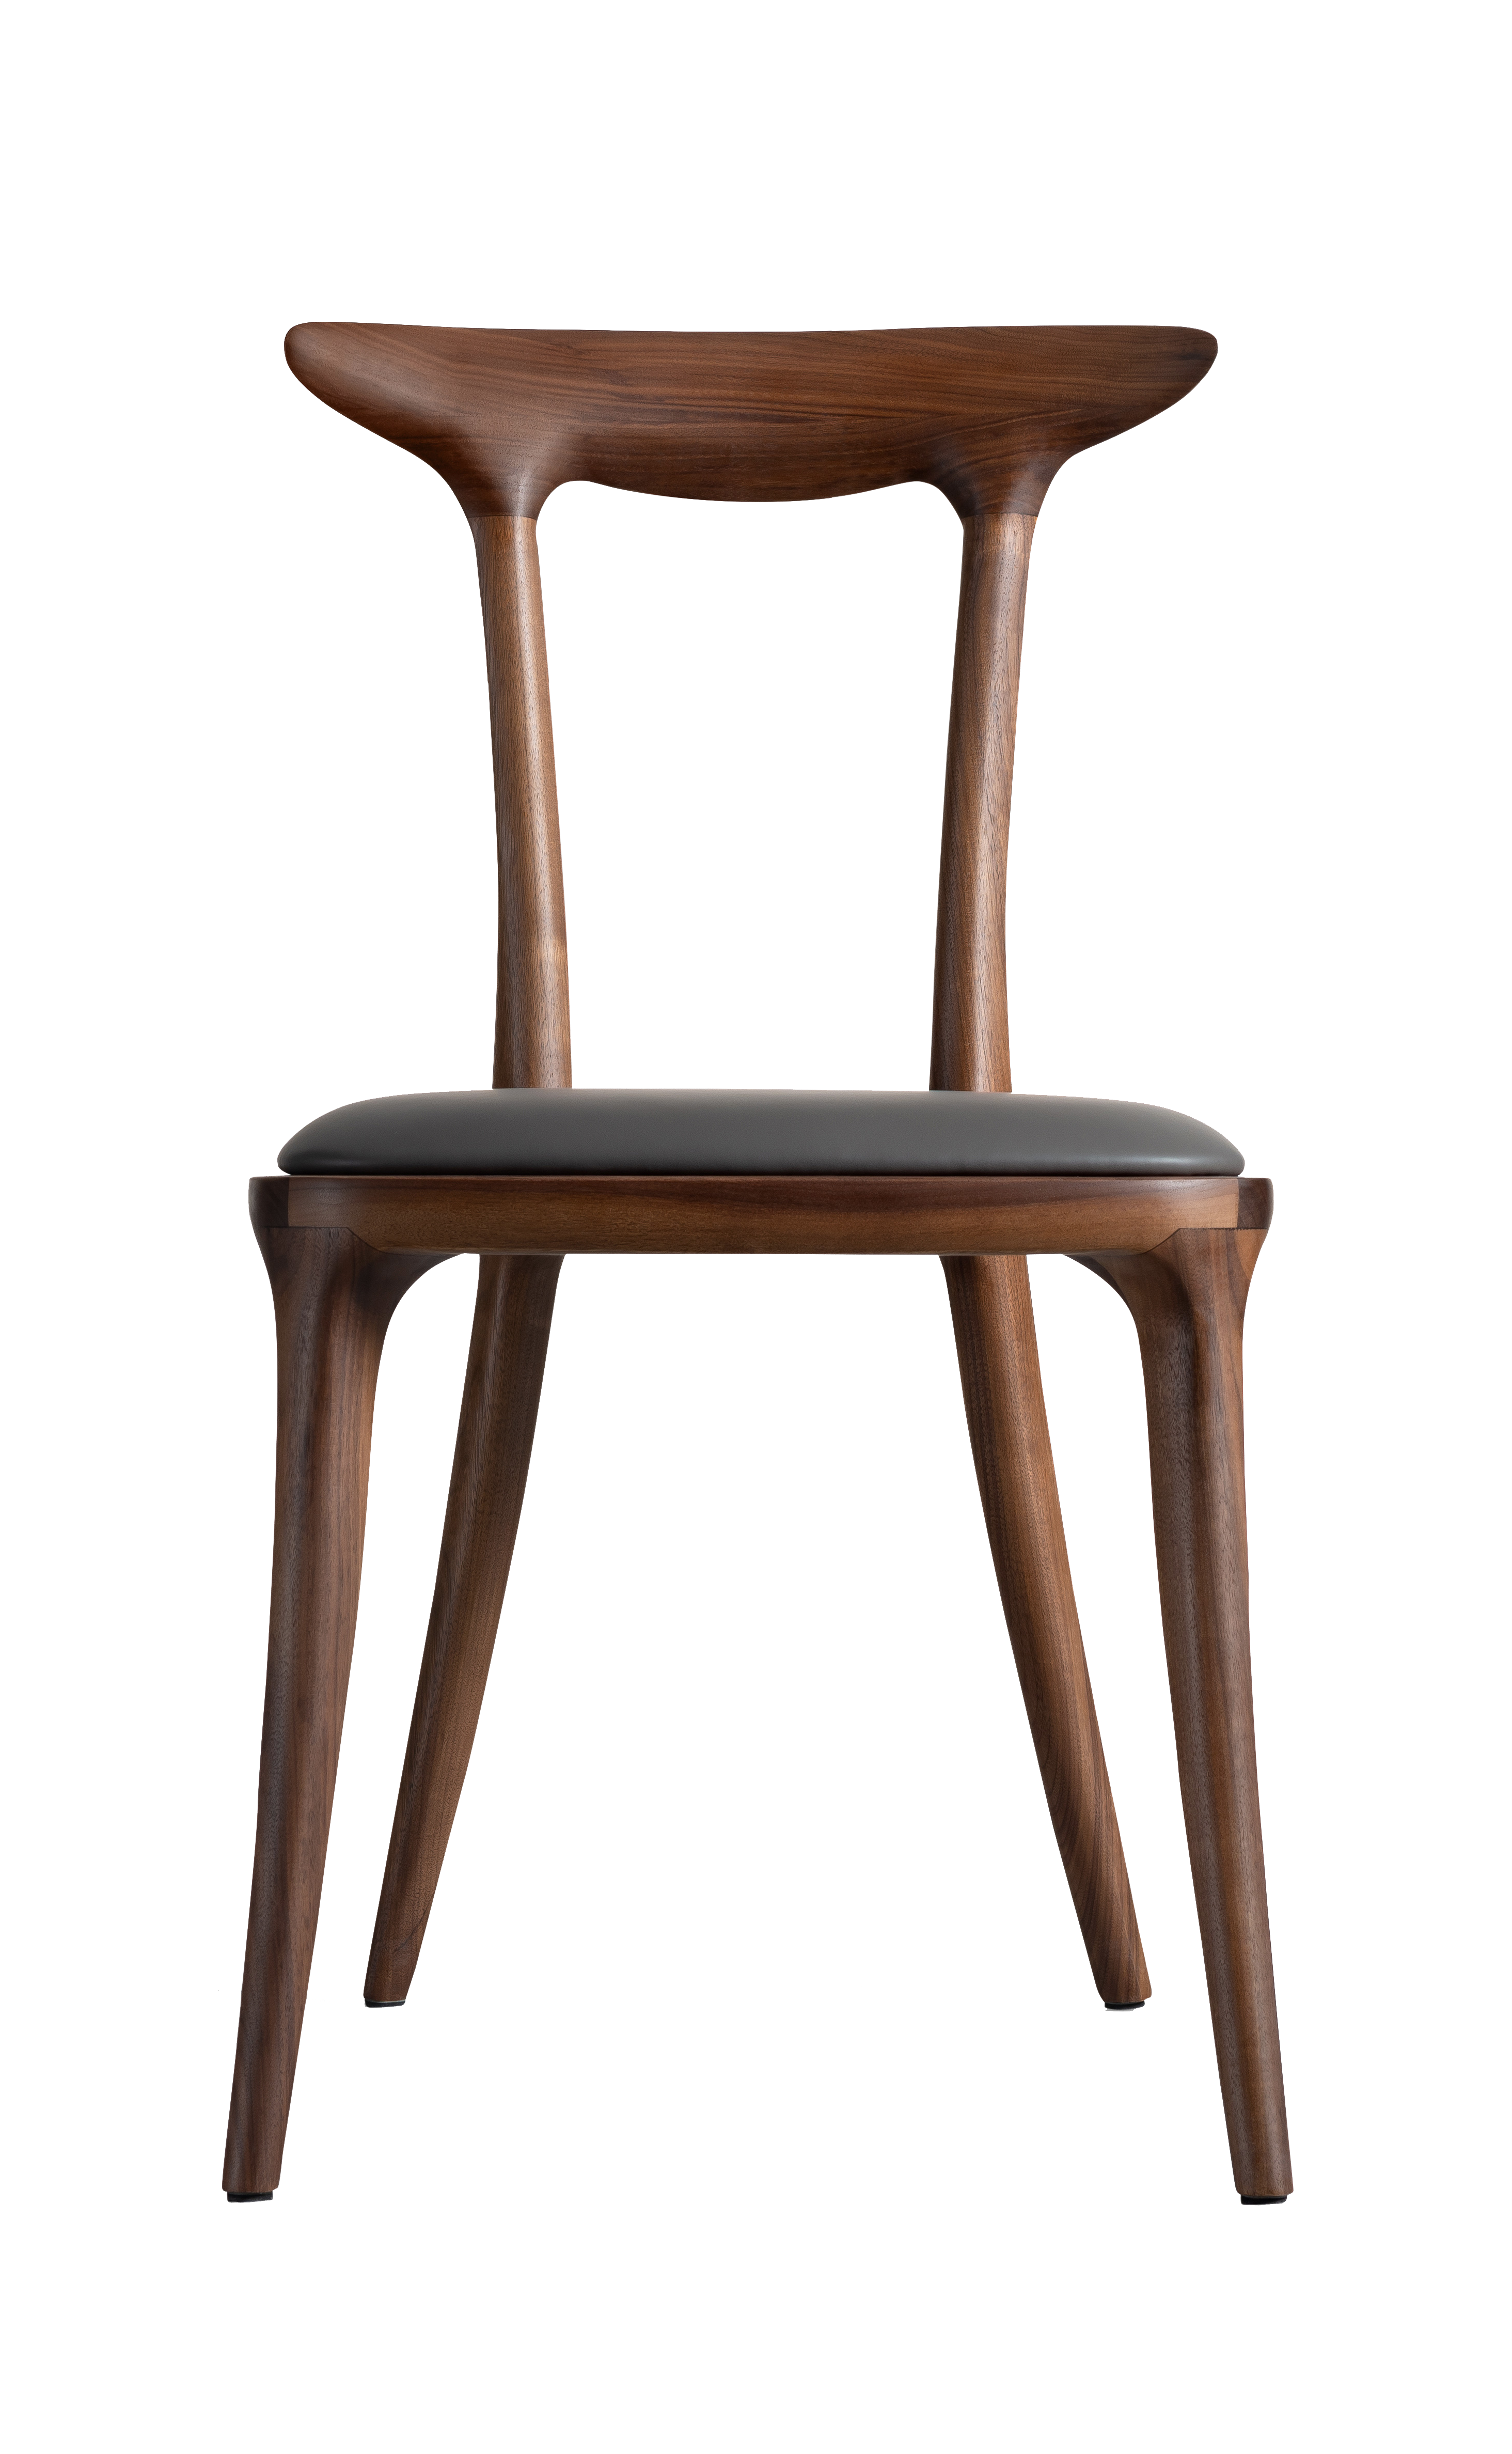 进口北美黑胡桃木材质说明把单位餐厅空间餐椅品类新中式风格455*550*